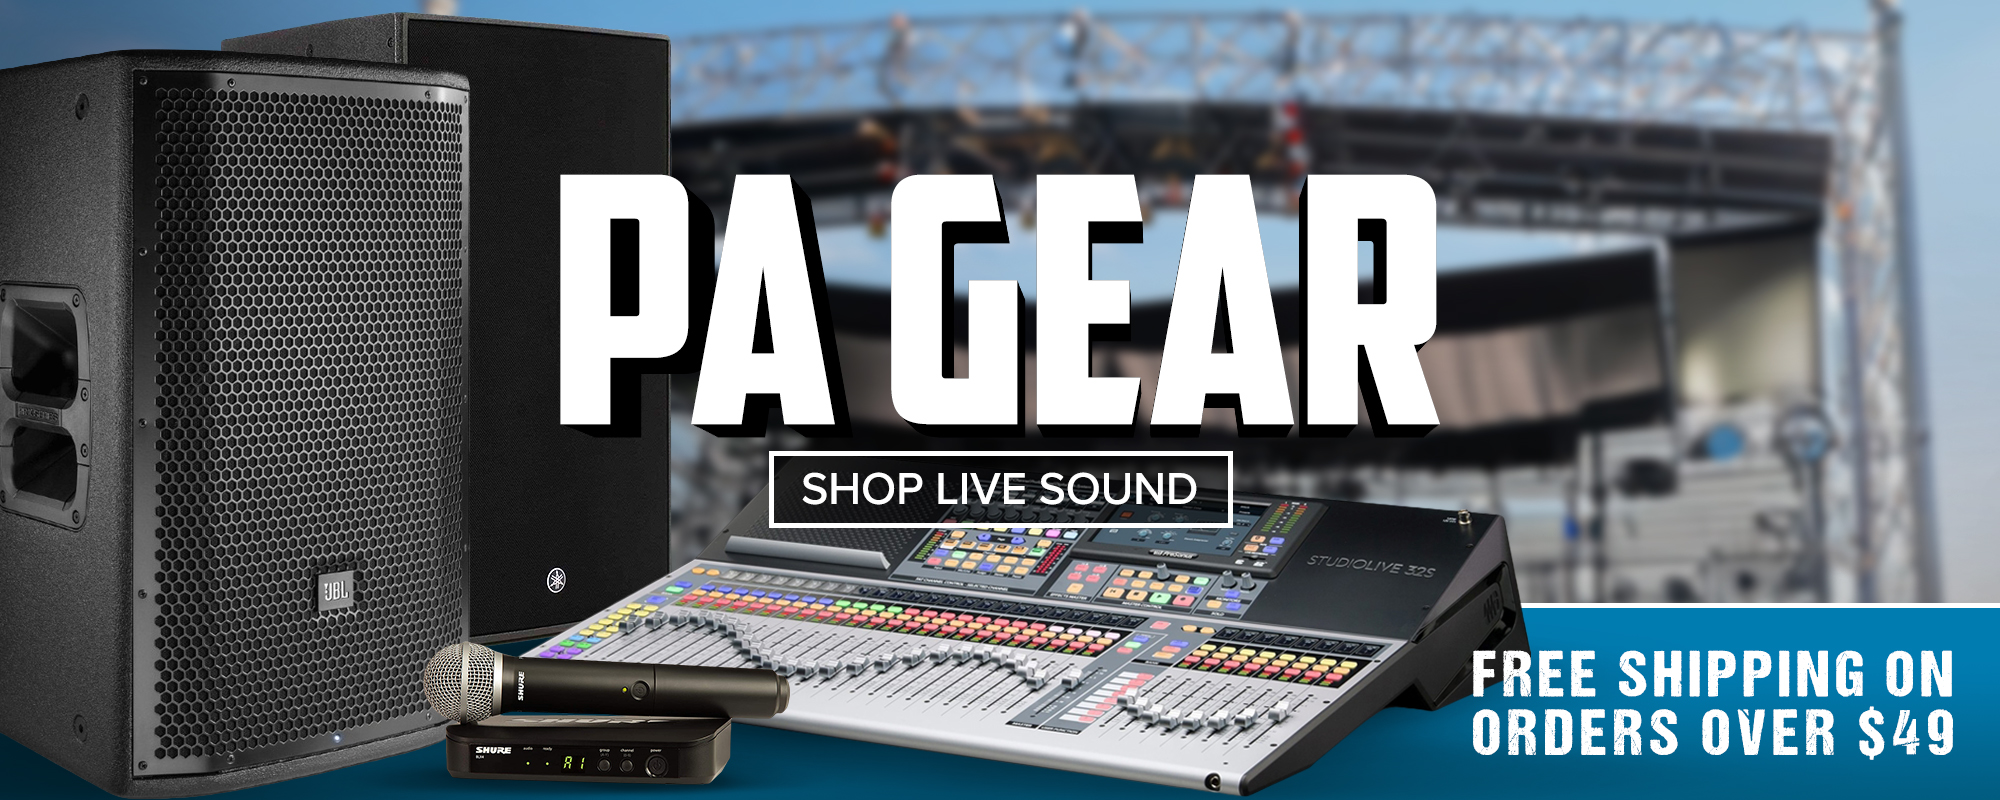 Shop Live Sound Now